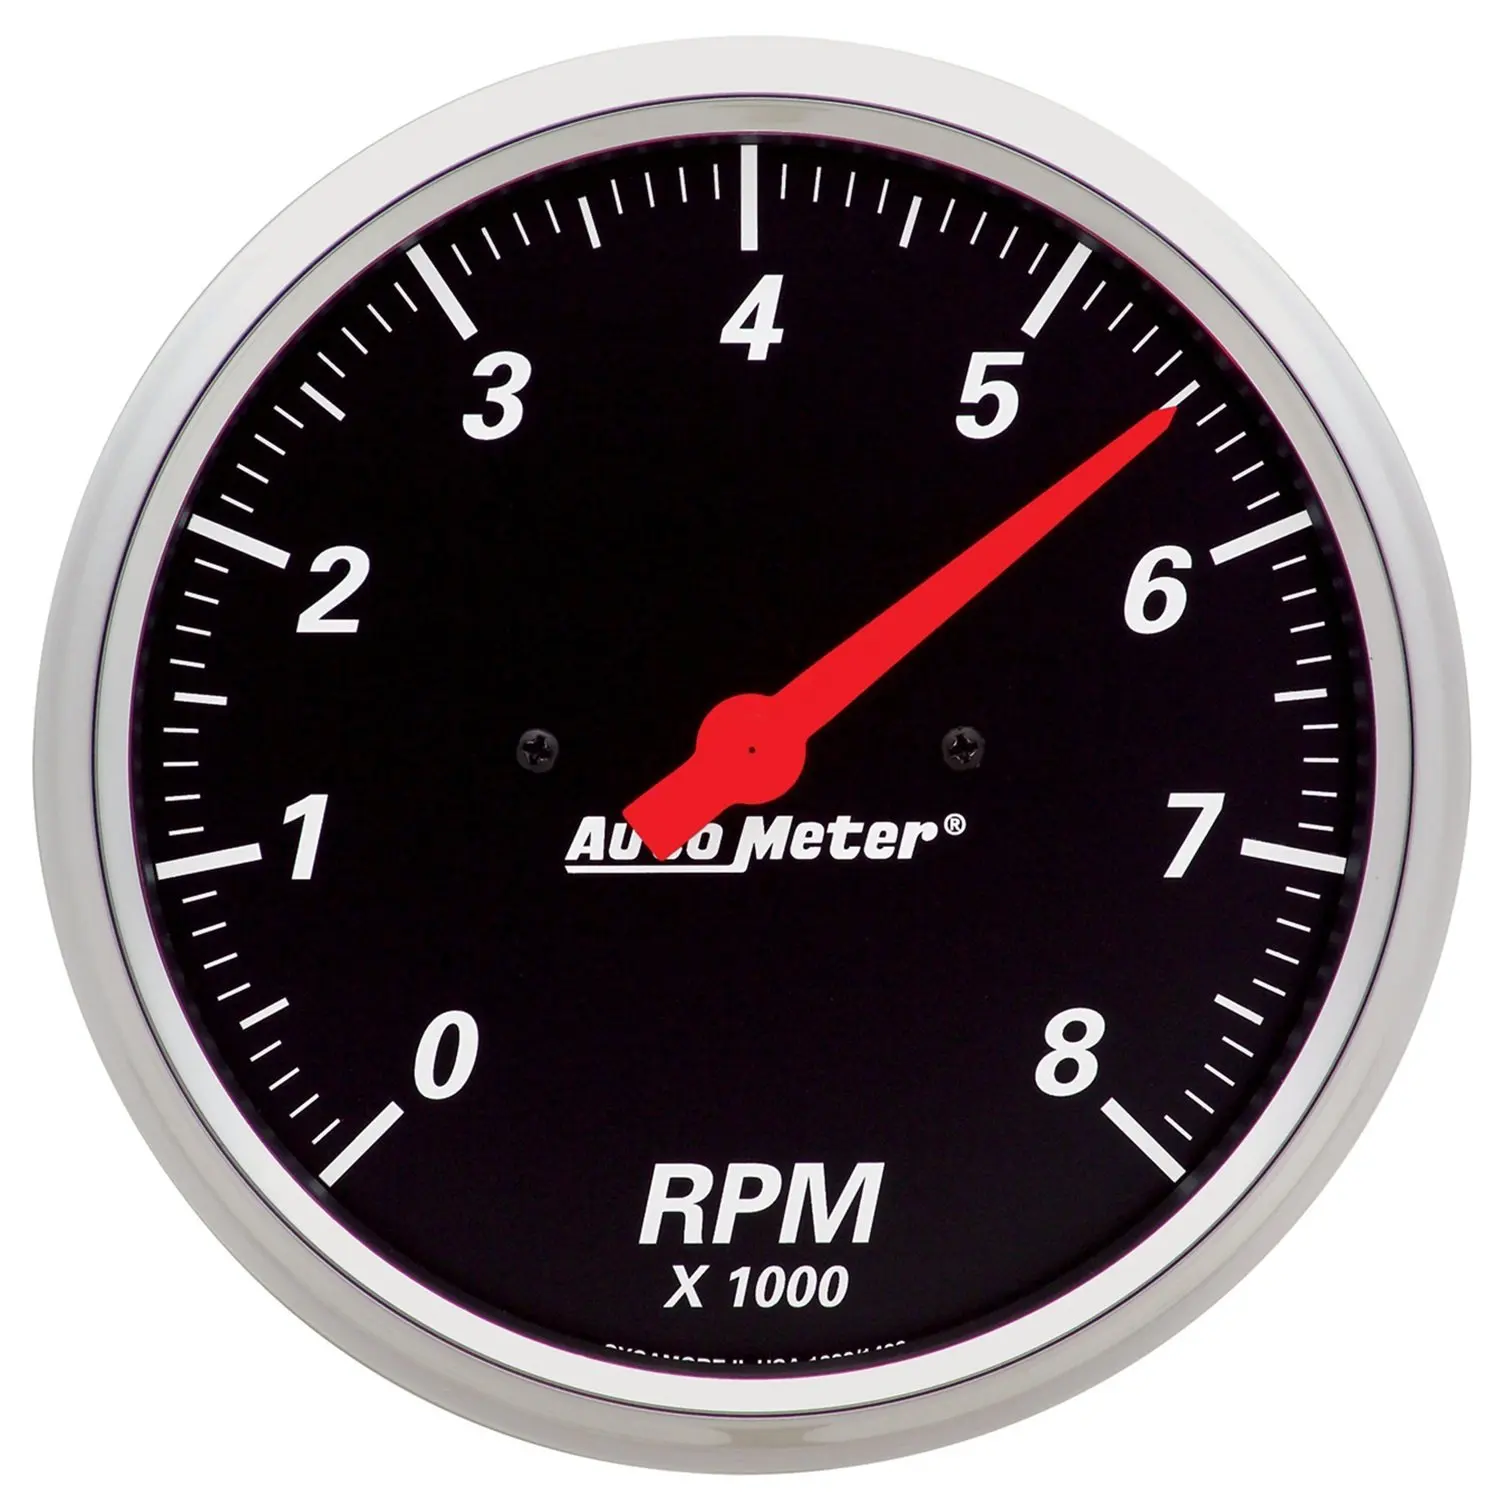 RPM meter